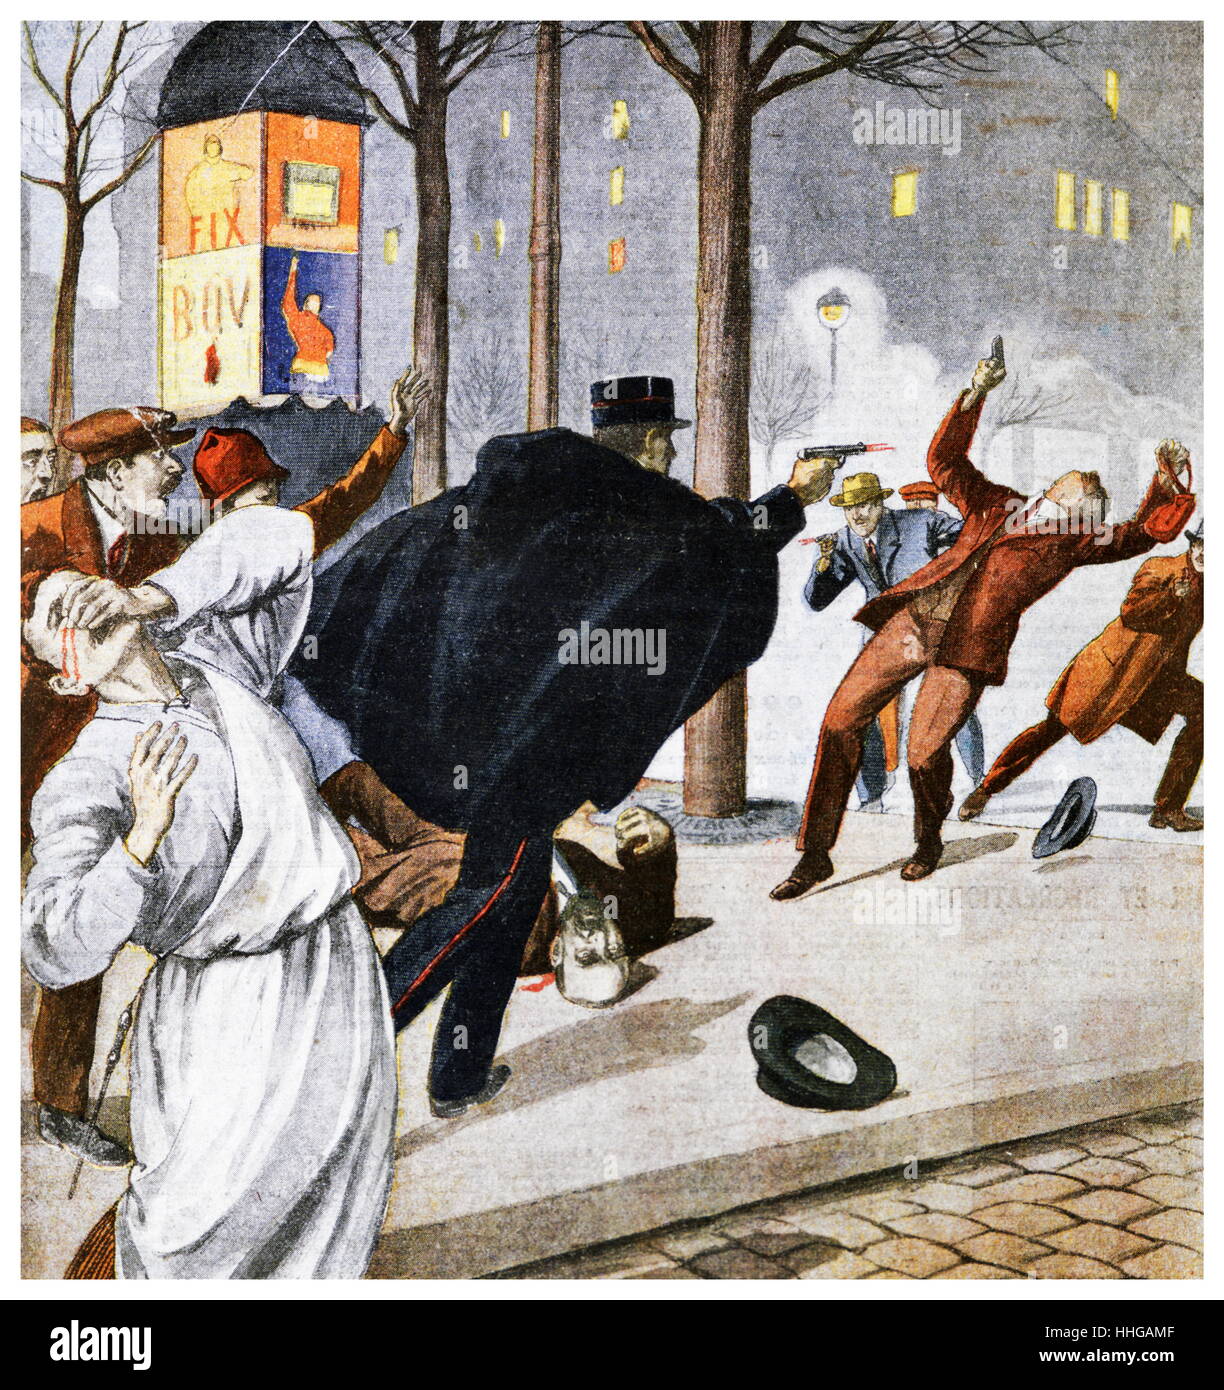 Abbildung zeigt französische Polizisten schießen ein bewaffneter Mann in eine Schießerei in einer Paris Straße. 1925-Illustration aus "Le Petit Journal" 1911 Stockfoto